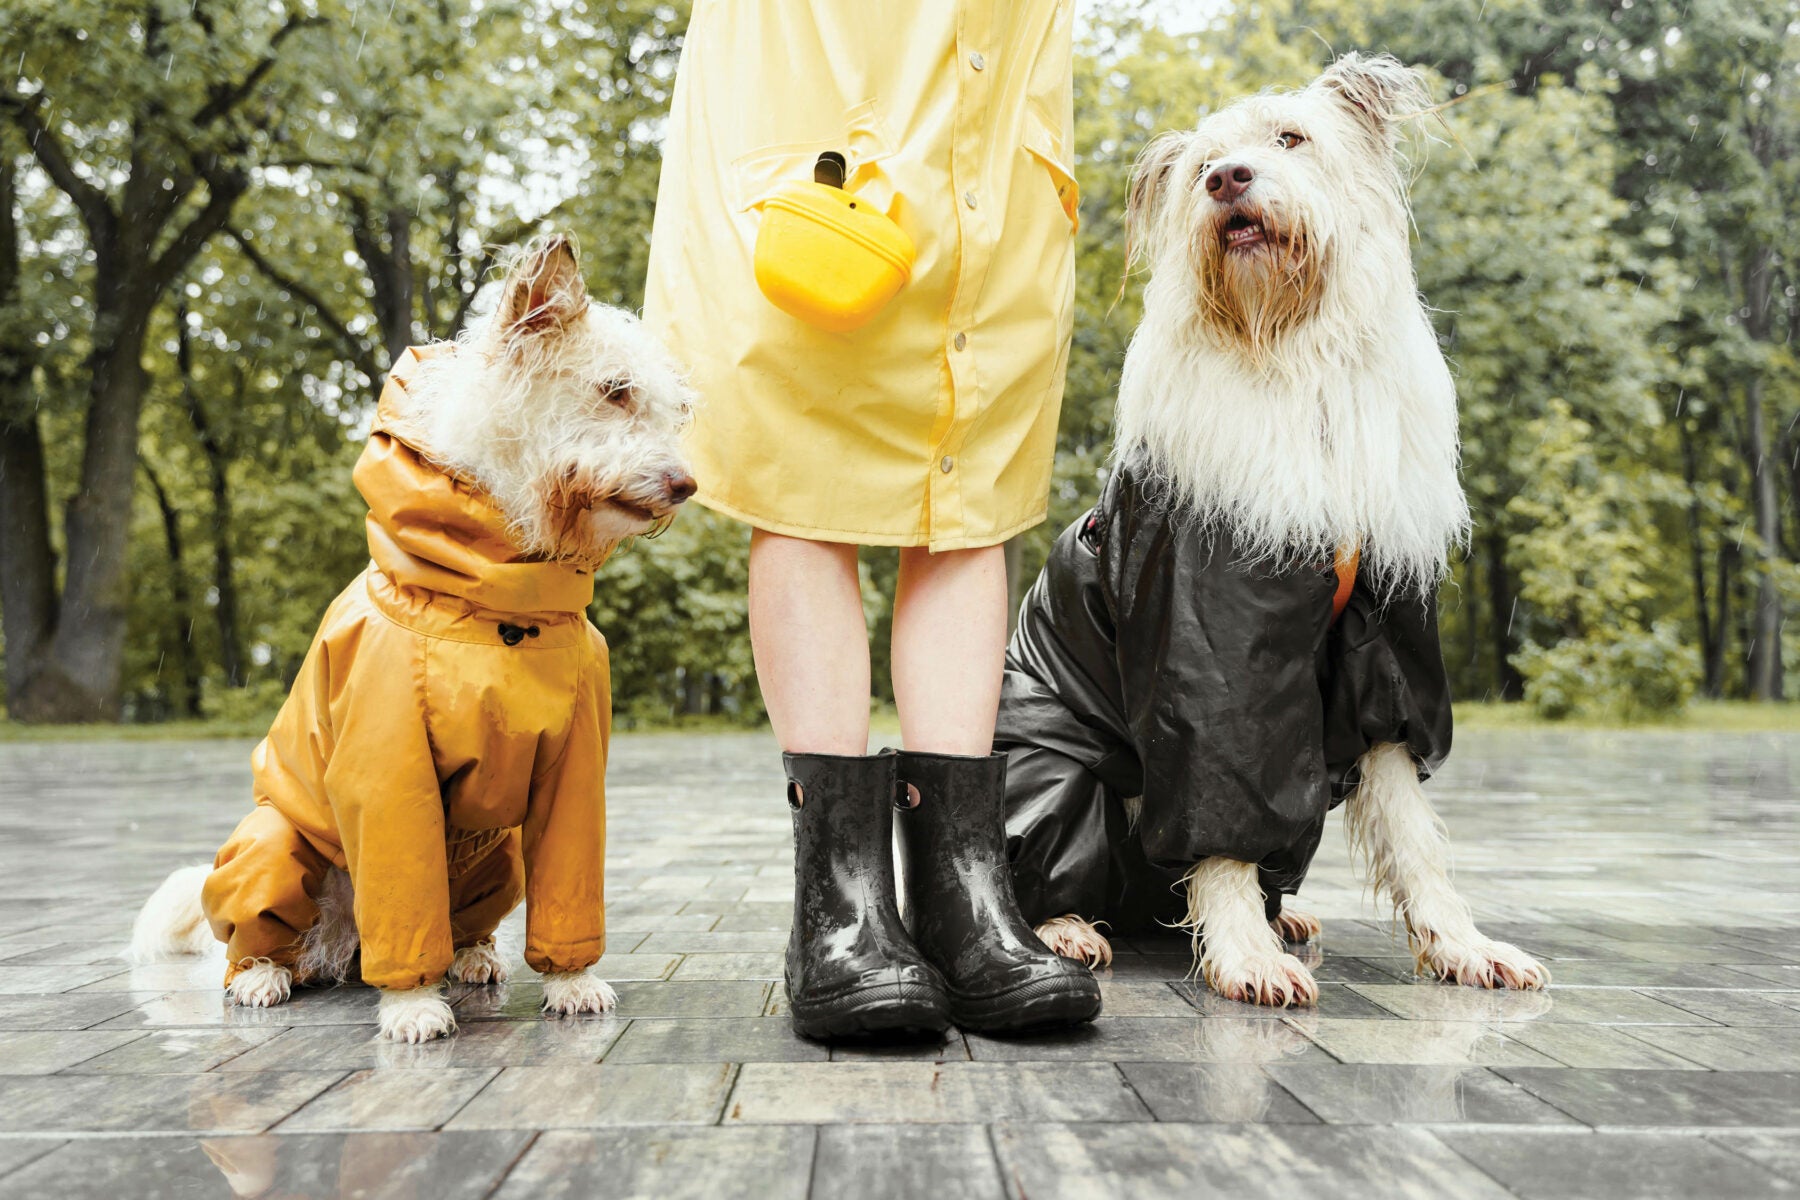 地面積水會弄濕狗狗的四肢，長期潮濕有發生濕疹的潛在危險。因此，除定期為狗狗修剪腳底毛和指甲外，如果外出散步地面有積水時，回家後一定要把爪子擦乾。